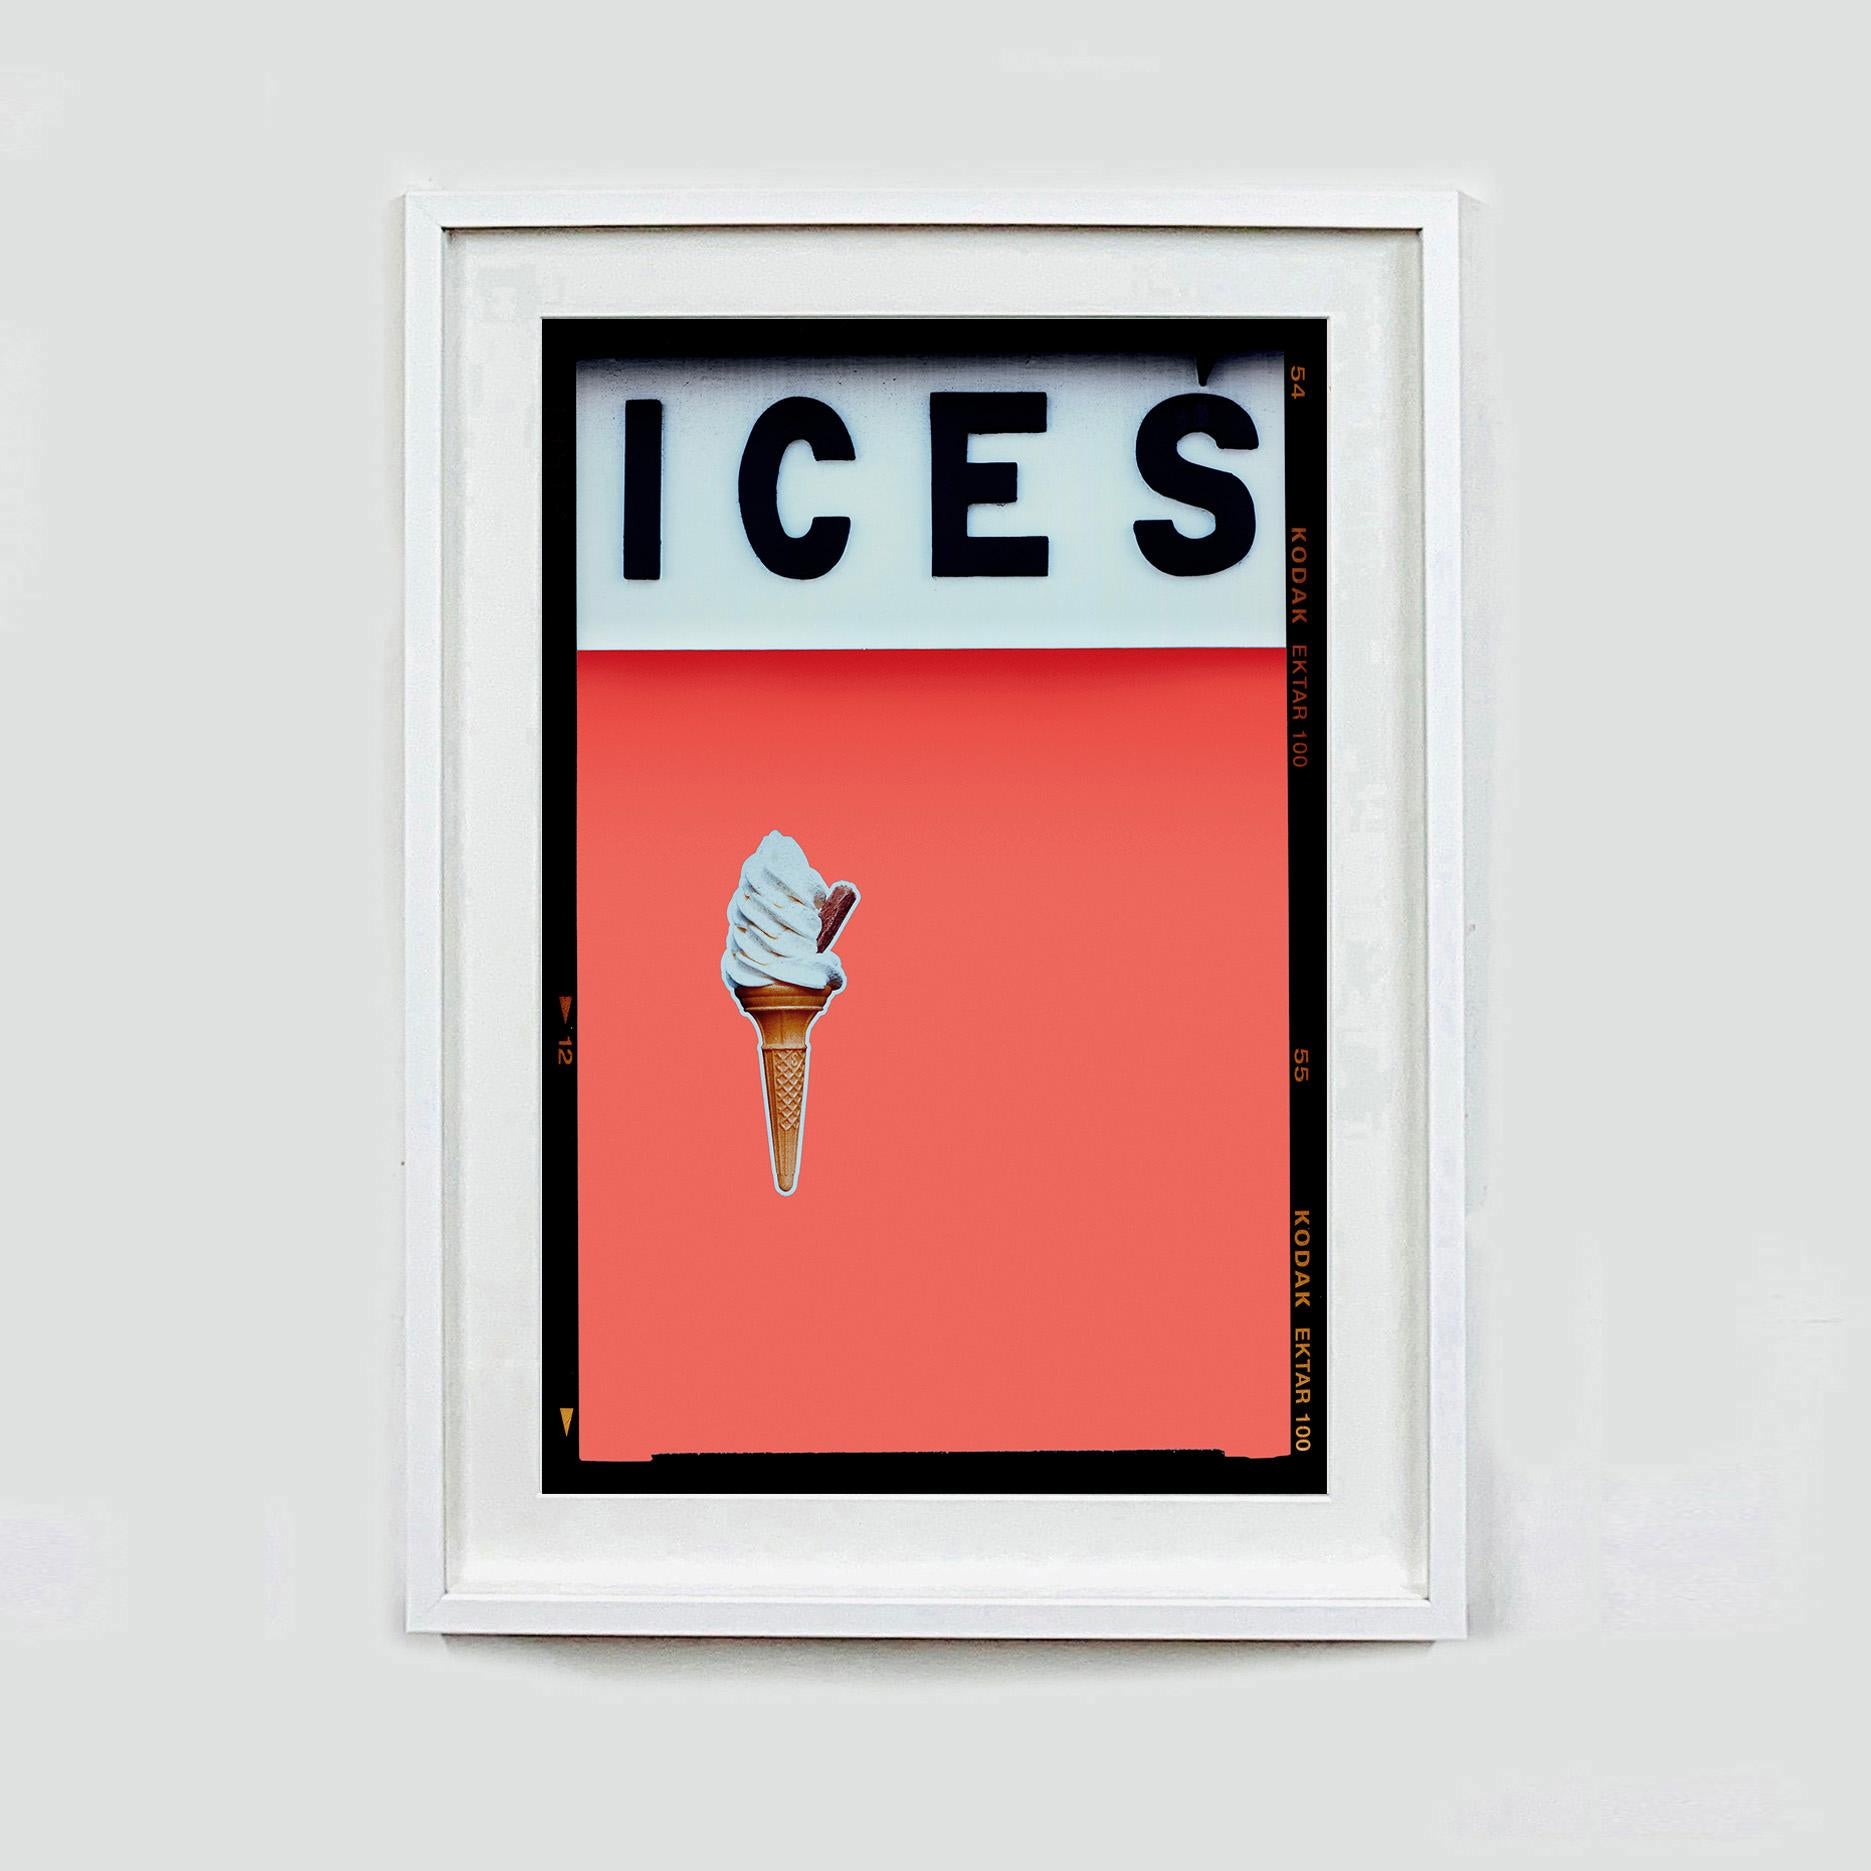 Ices (Melondrama), Bexhill-on-Sea – Farbfotografie am Meer (Zeitgenössisch), Print, von Richard Heeps